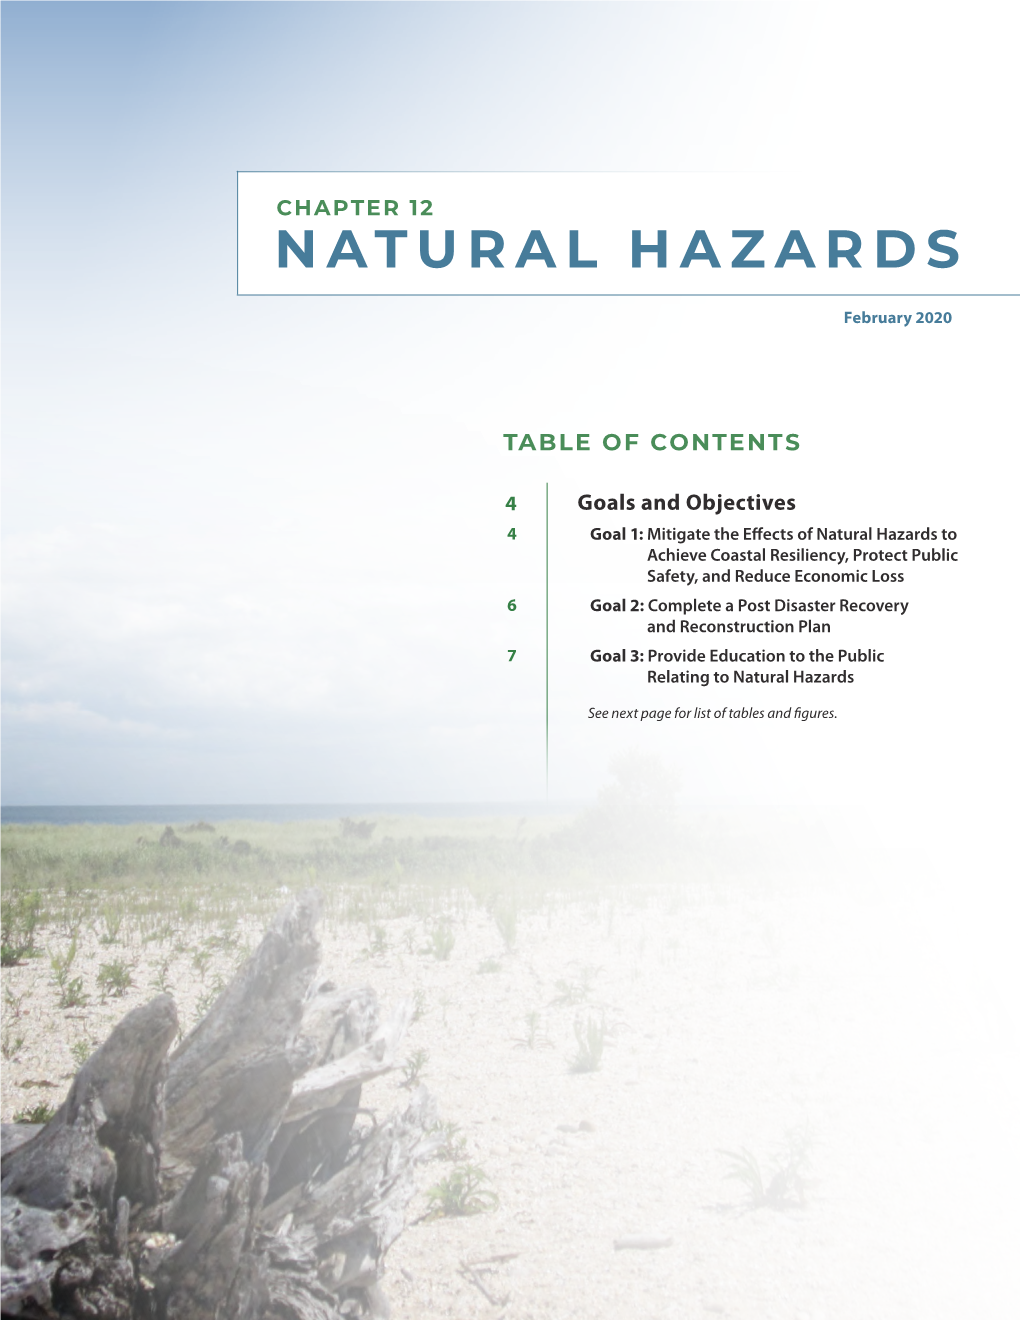 12. Natural Hazards